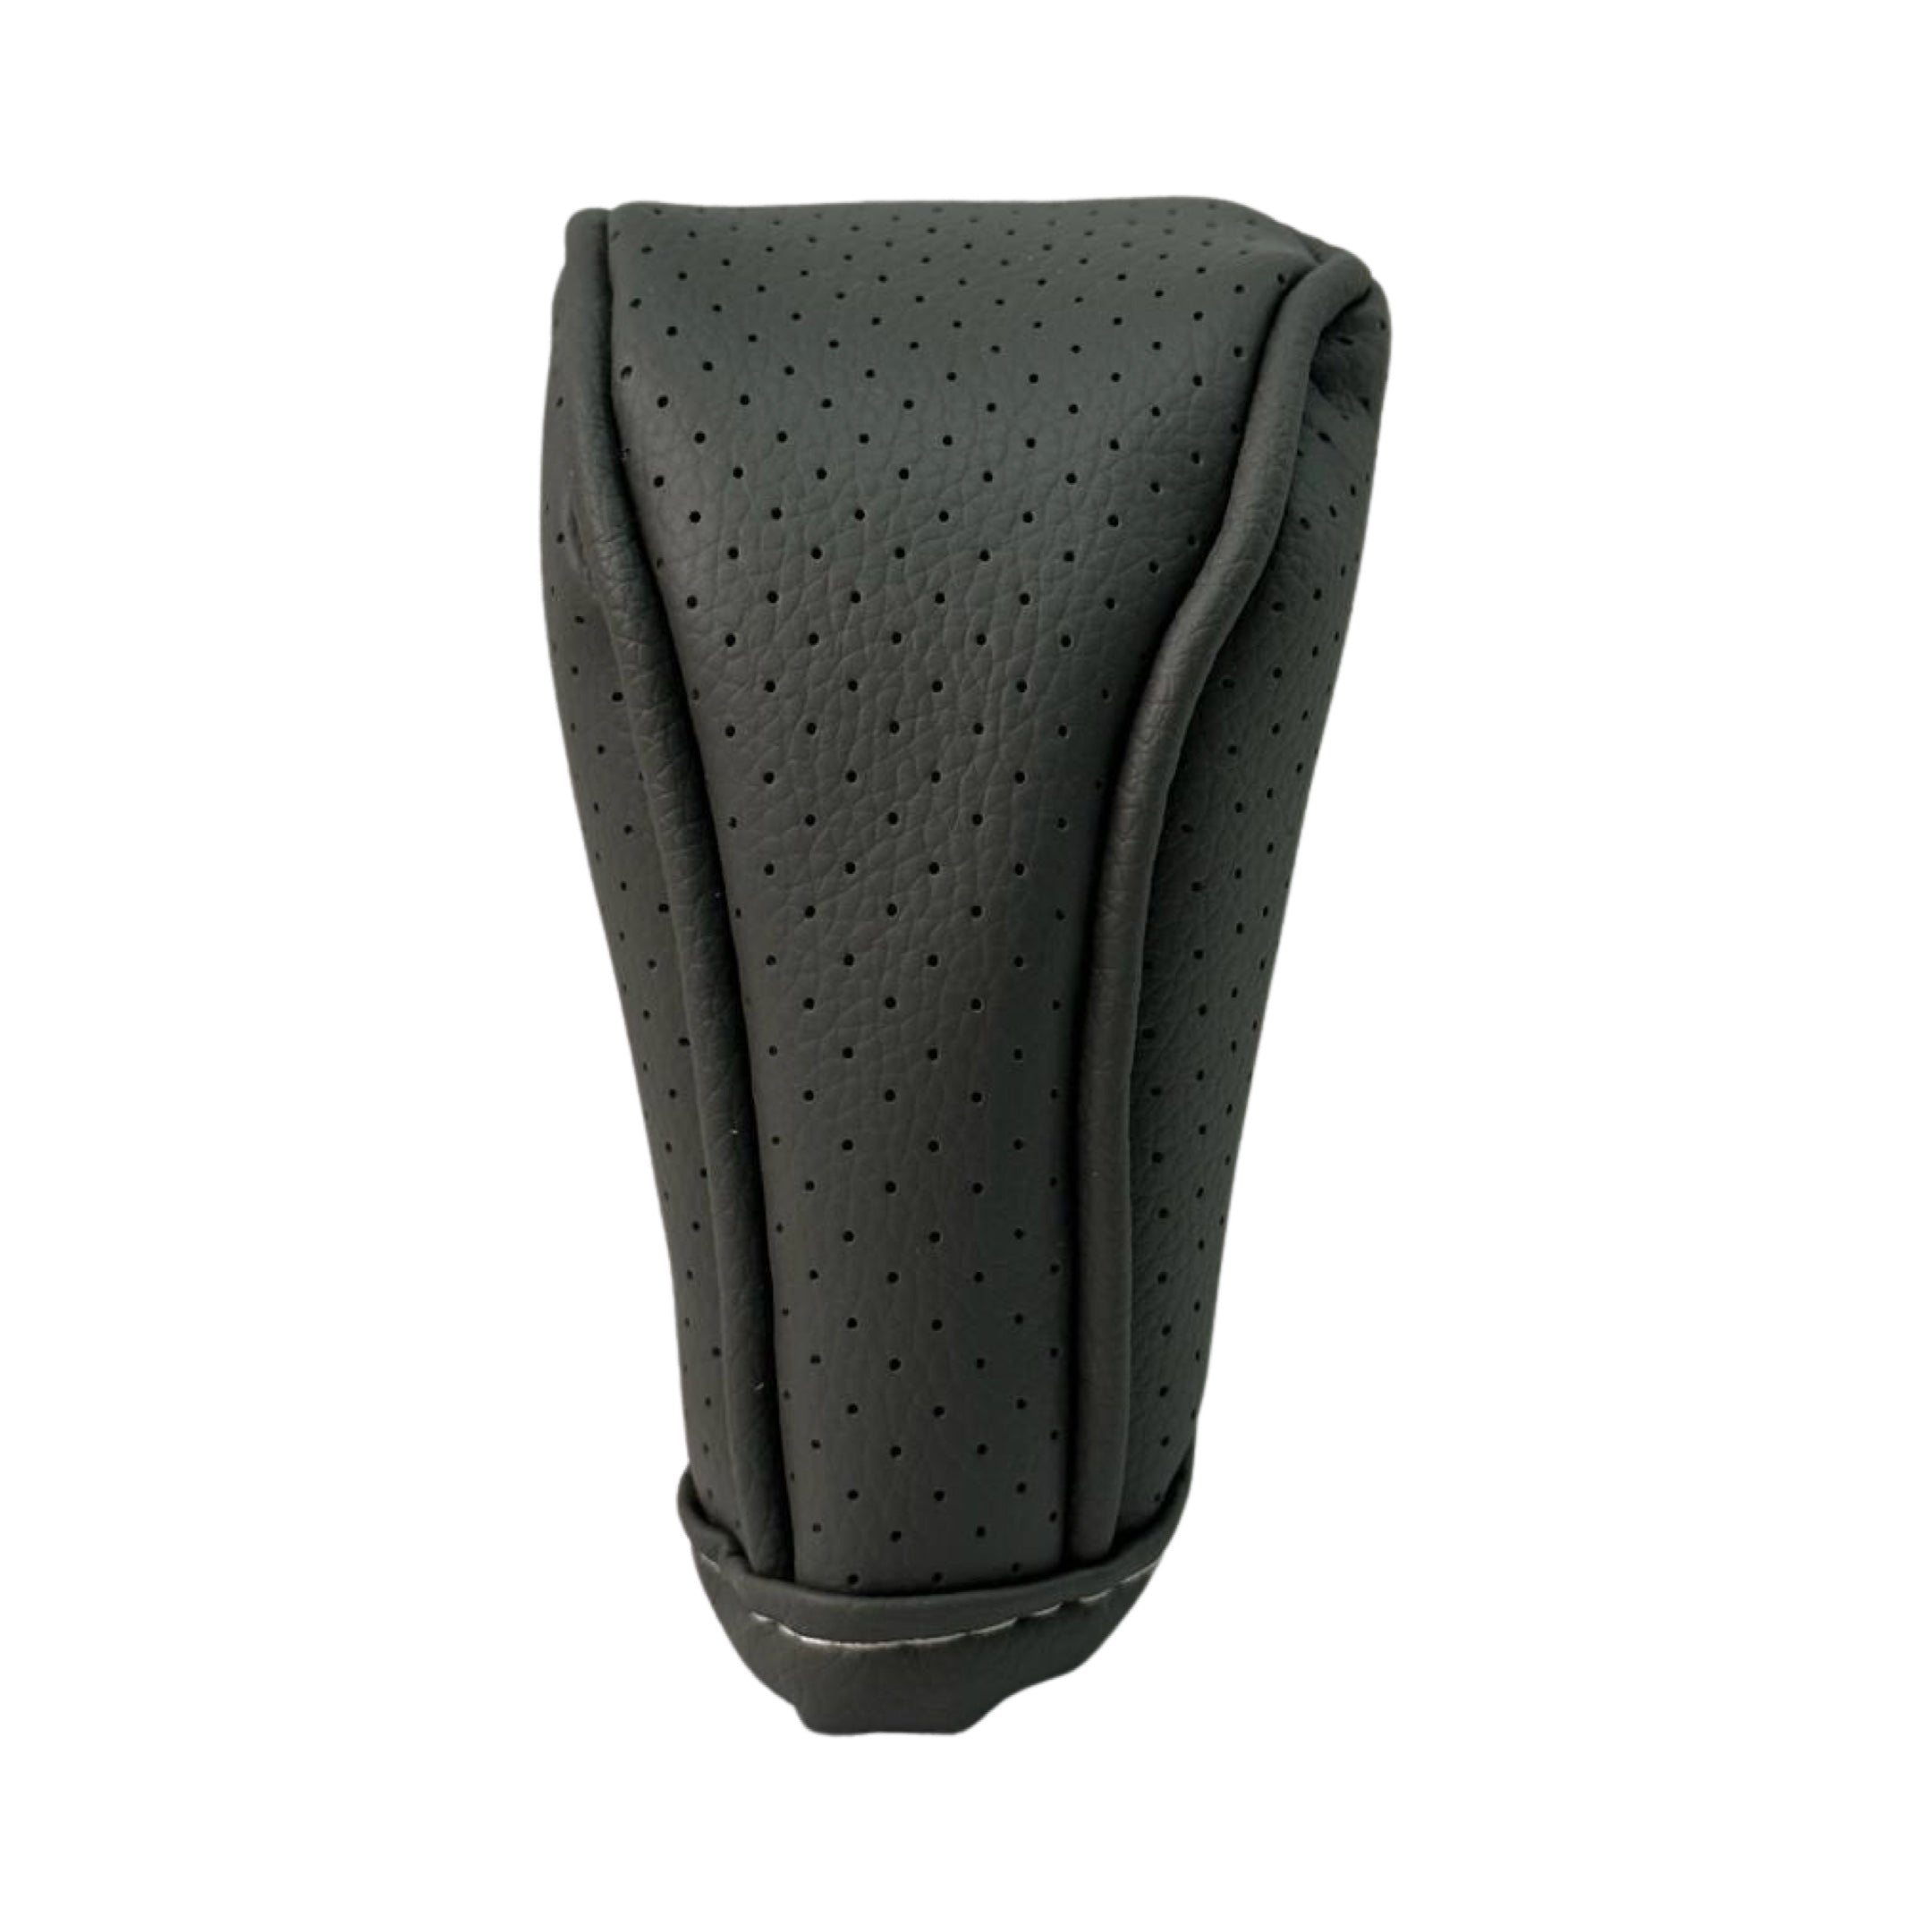 PU Leather Zipper Gear Cover